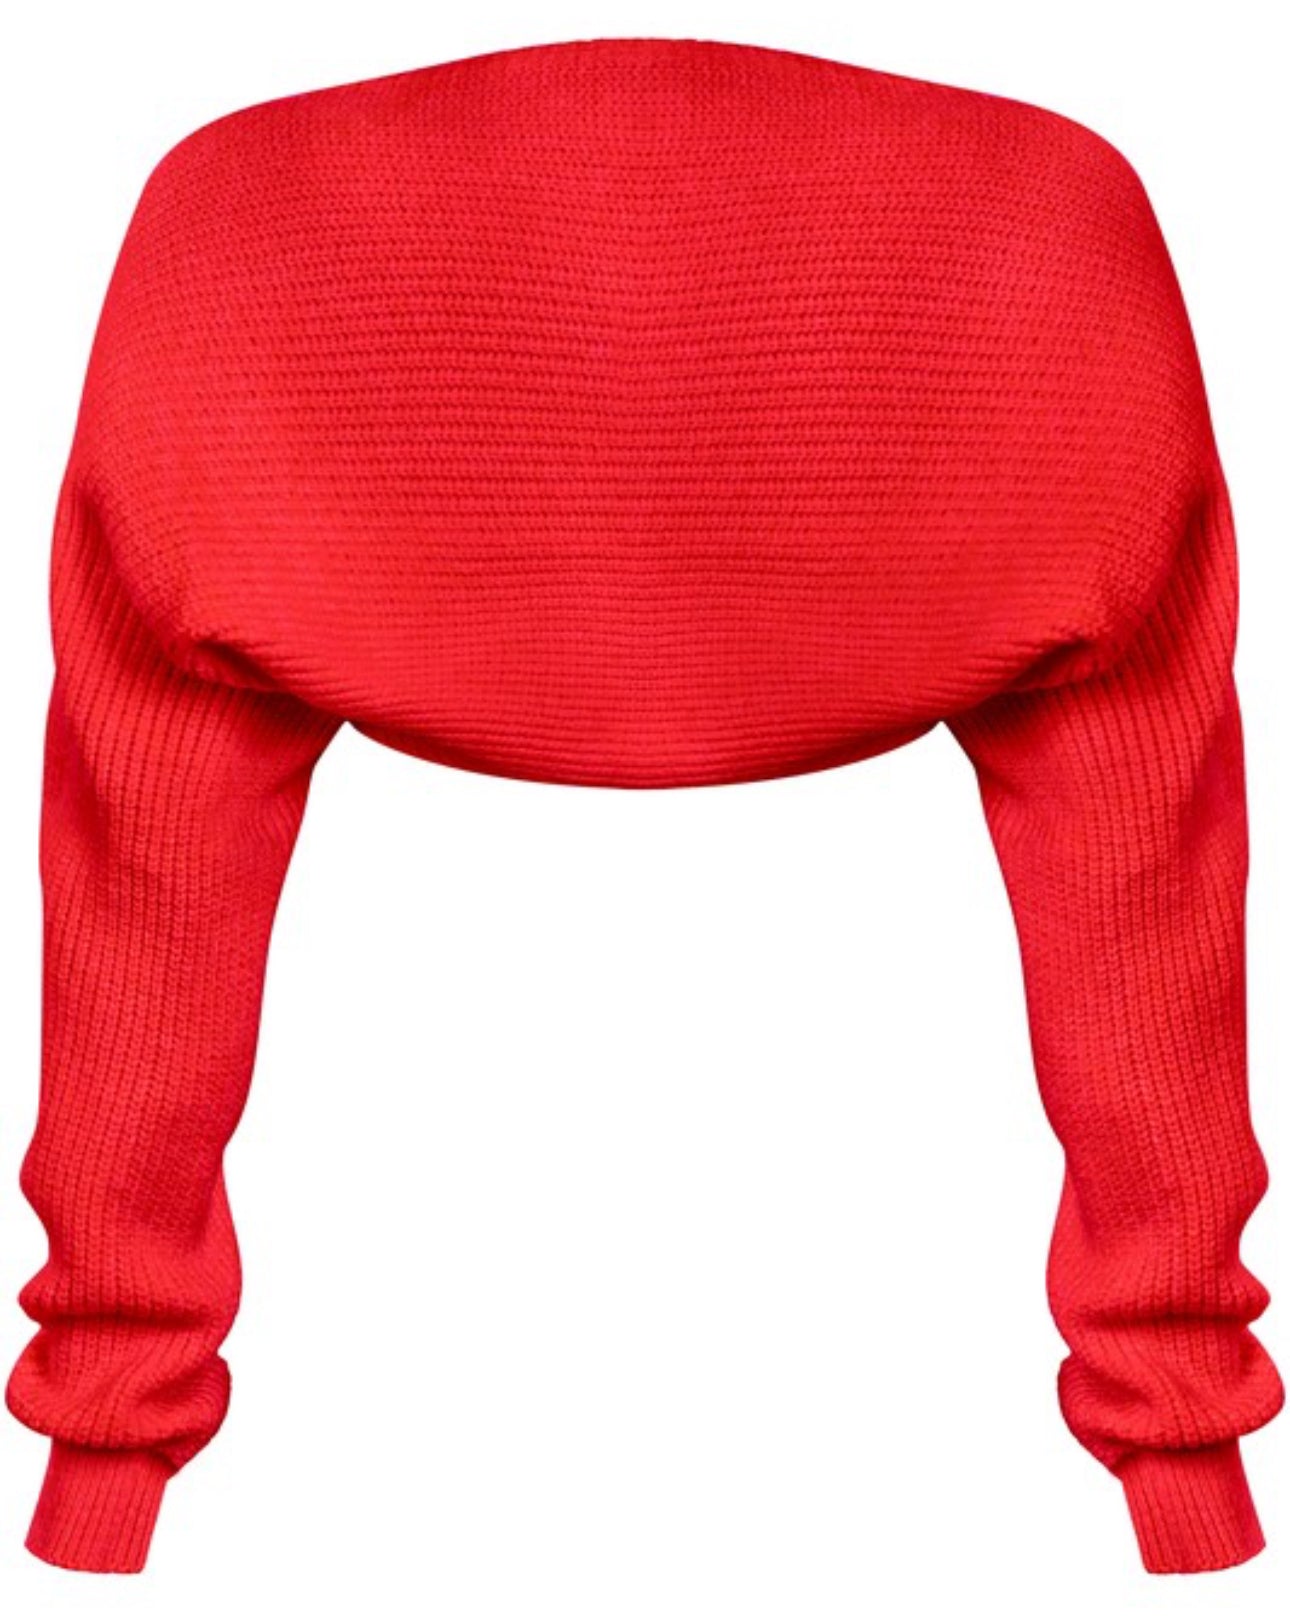 Cherry red knitted bolero